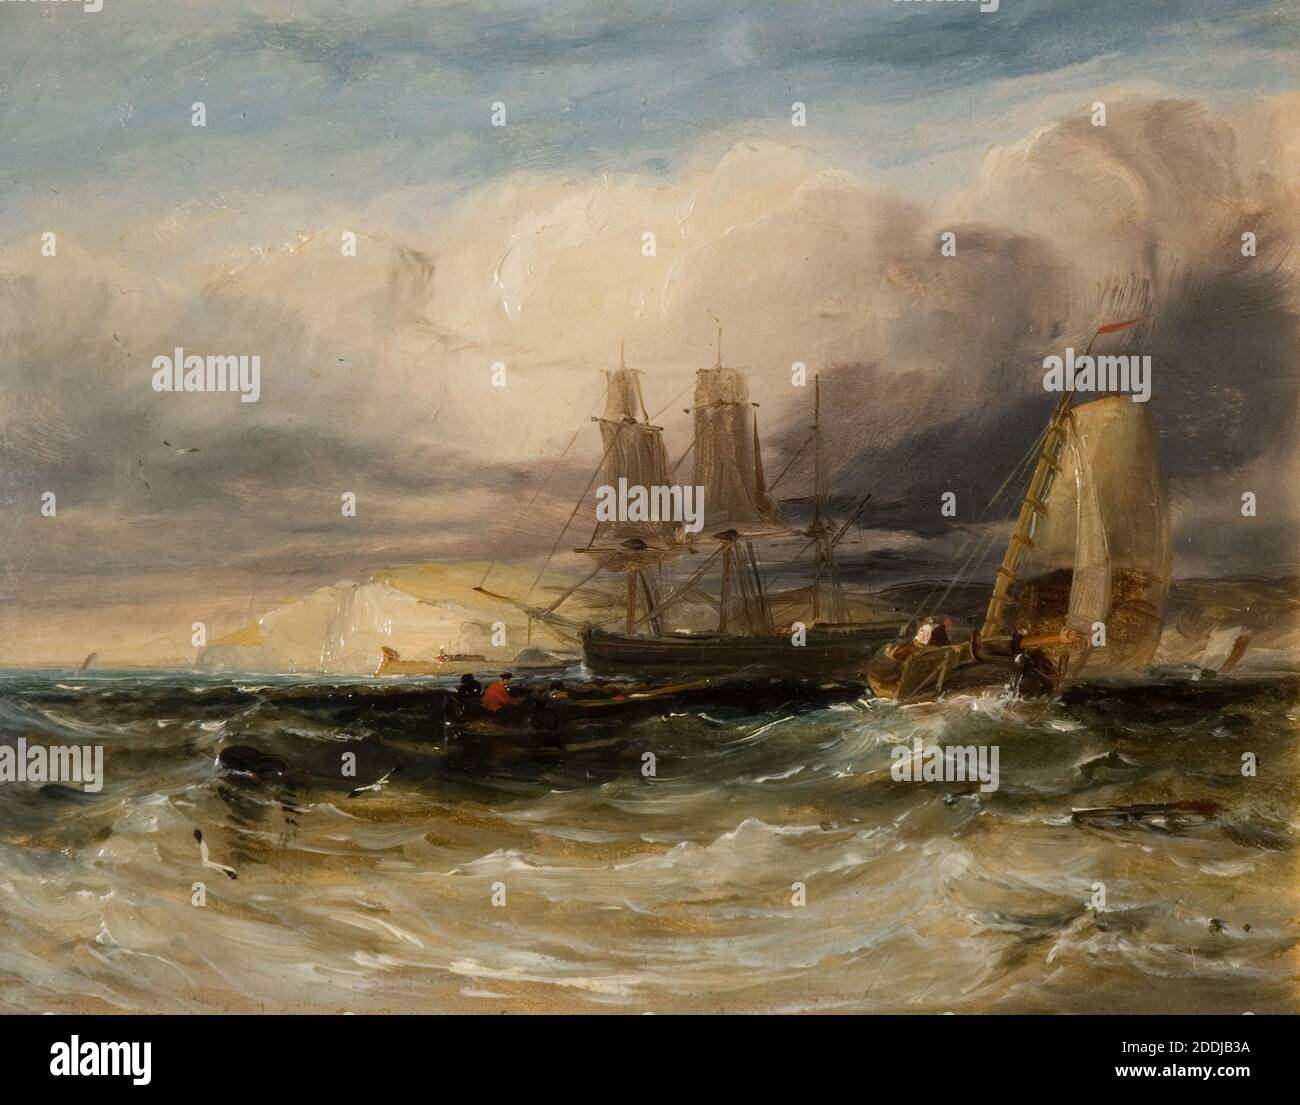 Sur la Tamise, fort de Tilbury, 1840 par George Chambers, bateau, peinture à l'huile, nuage, mer, paysage marin, vagues, art marin, navire Banque D'Images